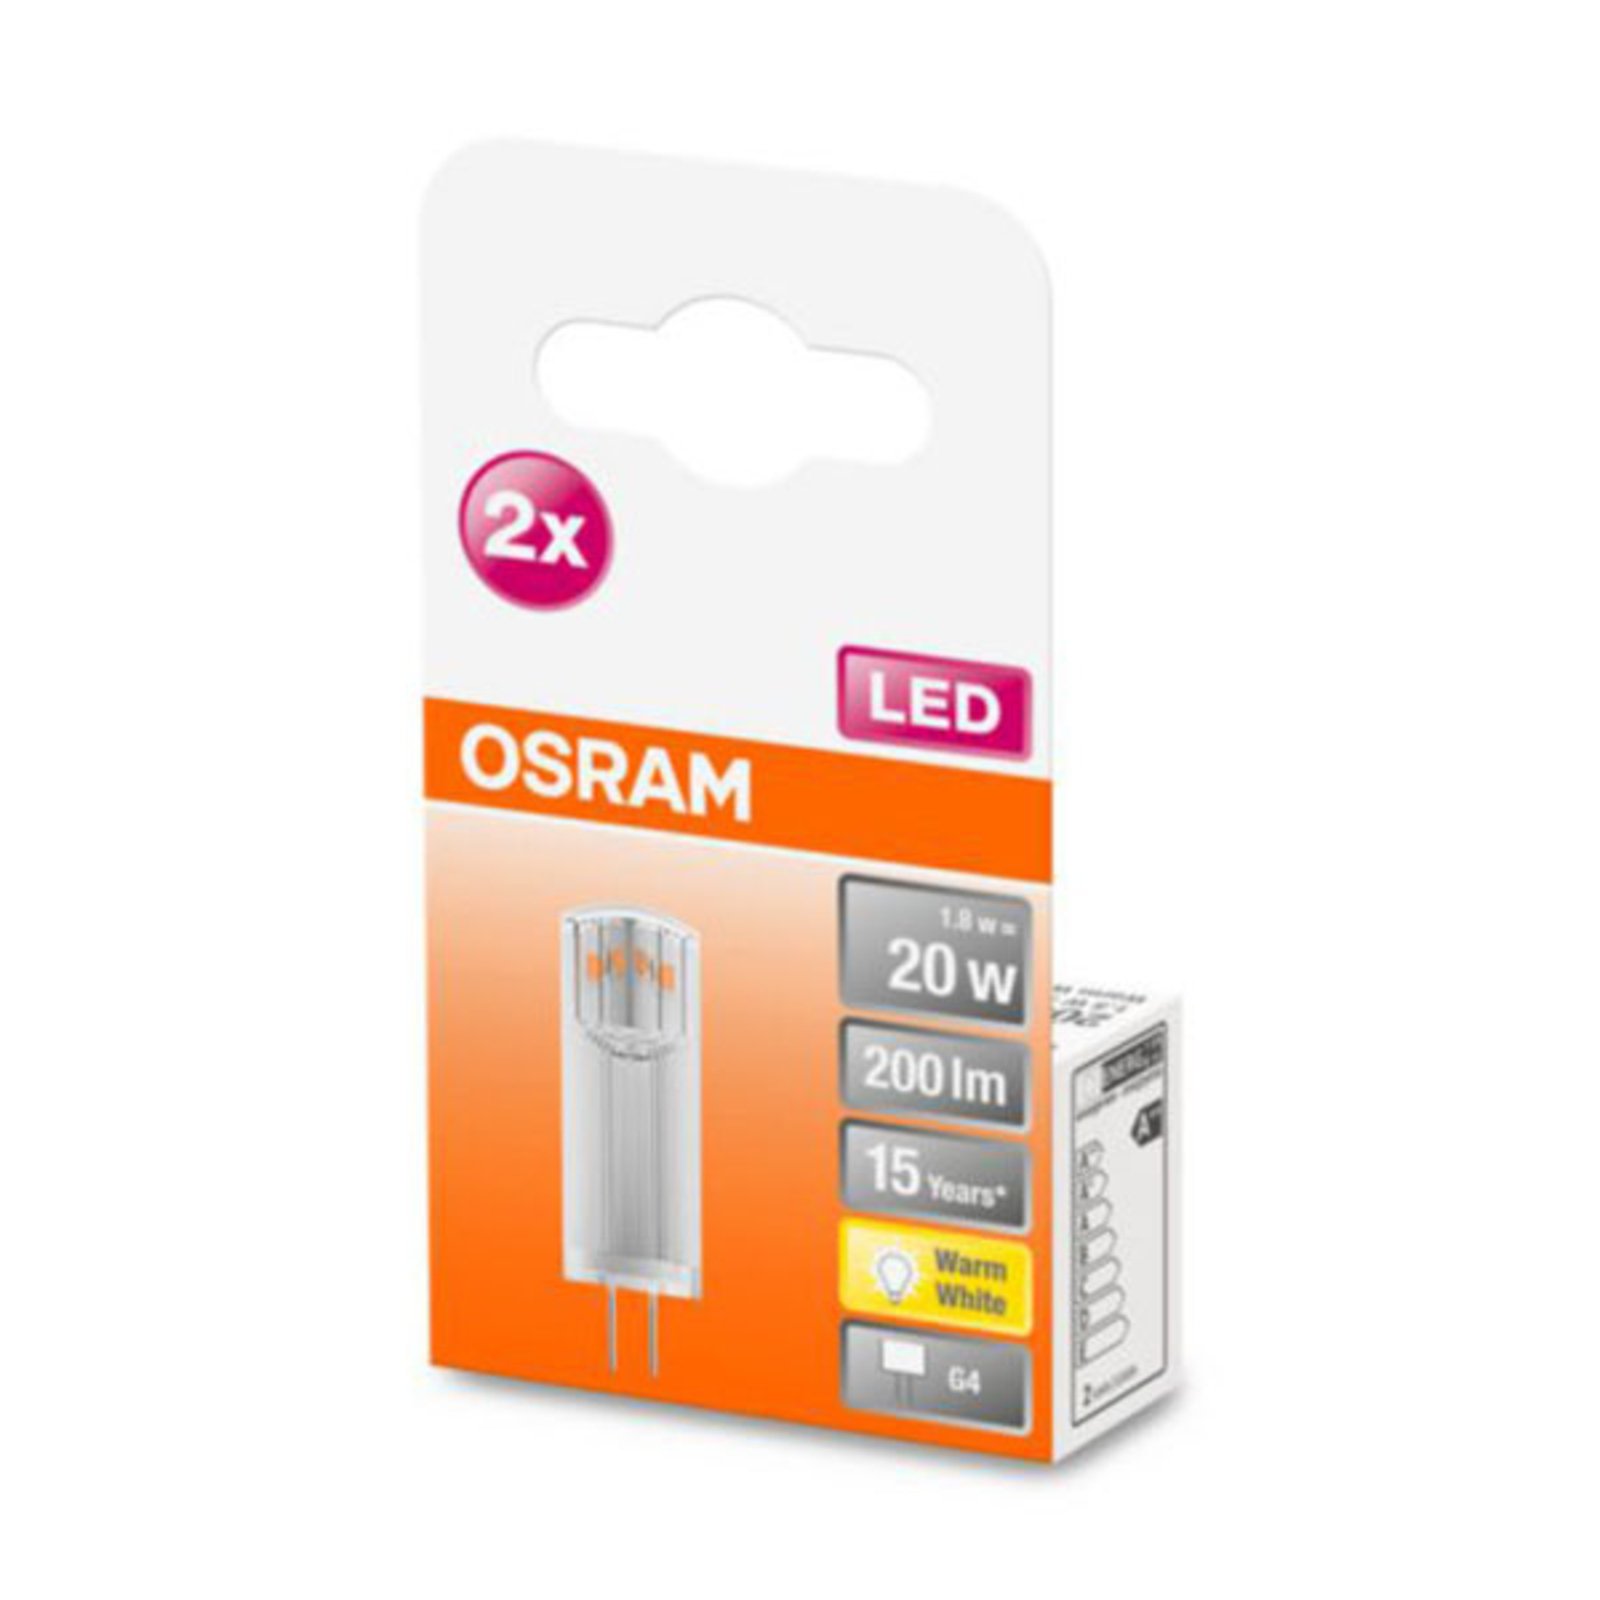 OSRAM bombilla LED bi-pin G4 1,8W 2.700K claro, 2